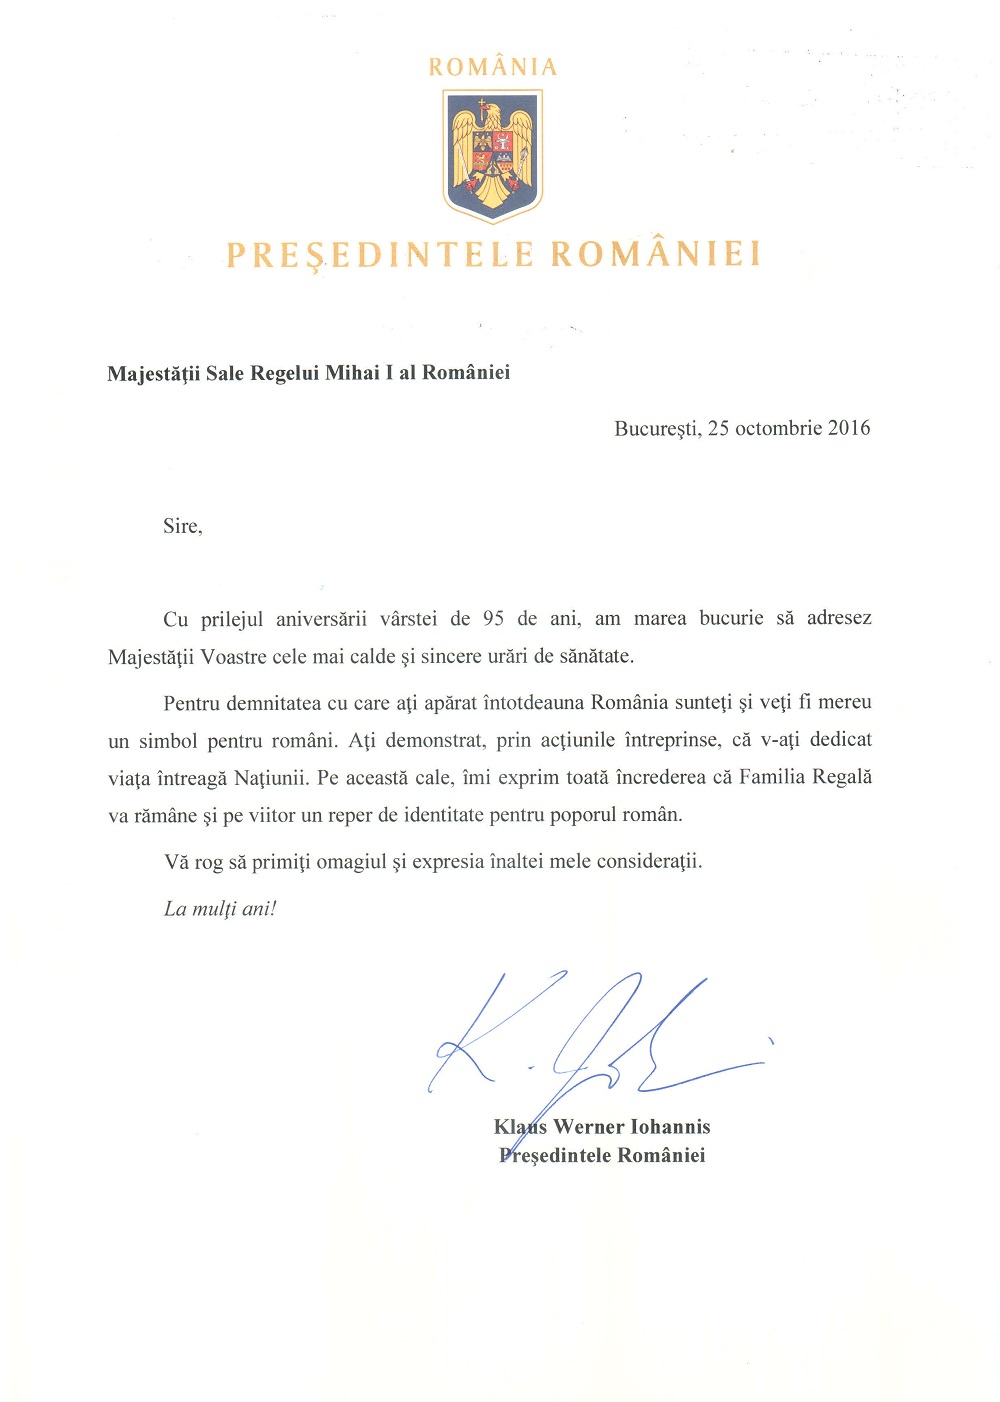 mesajul-presedintelui-romaniei-adresat-regelui-mihai-25-octombrie-2016